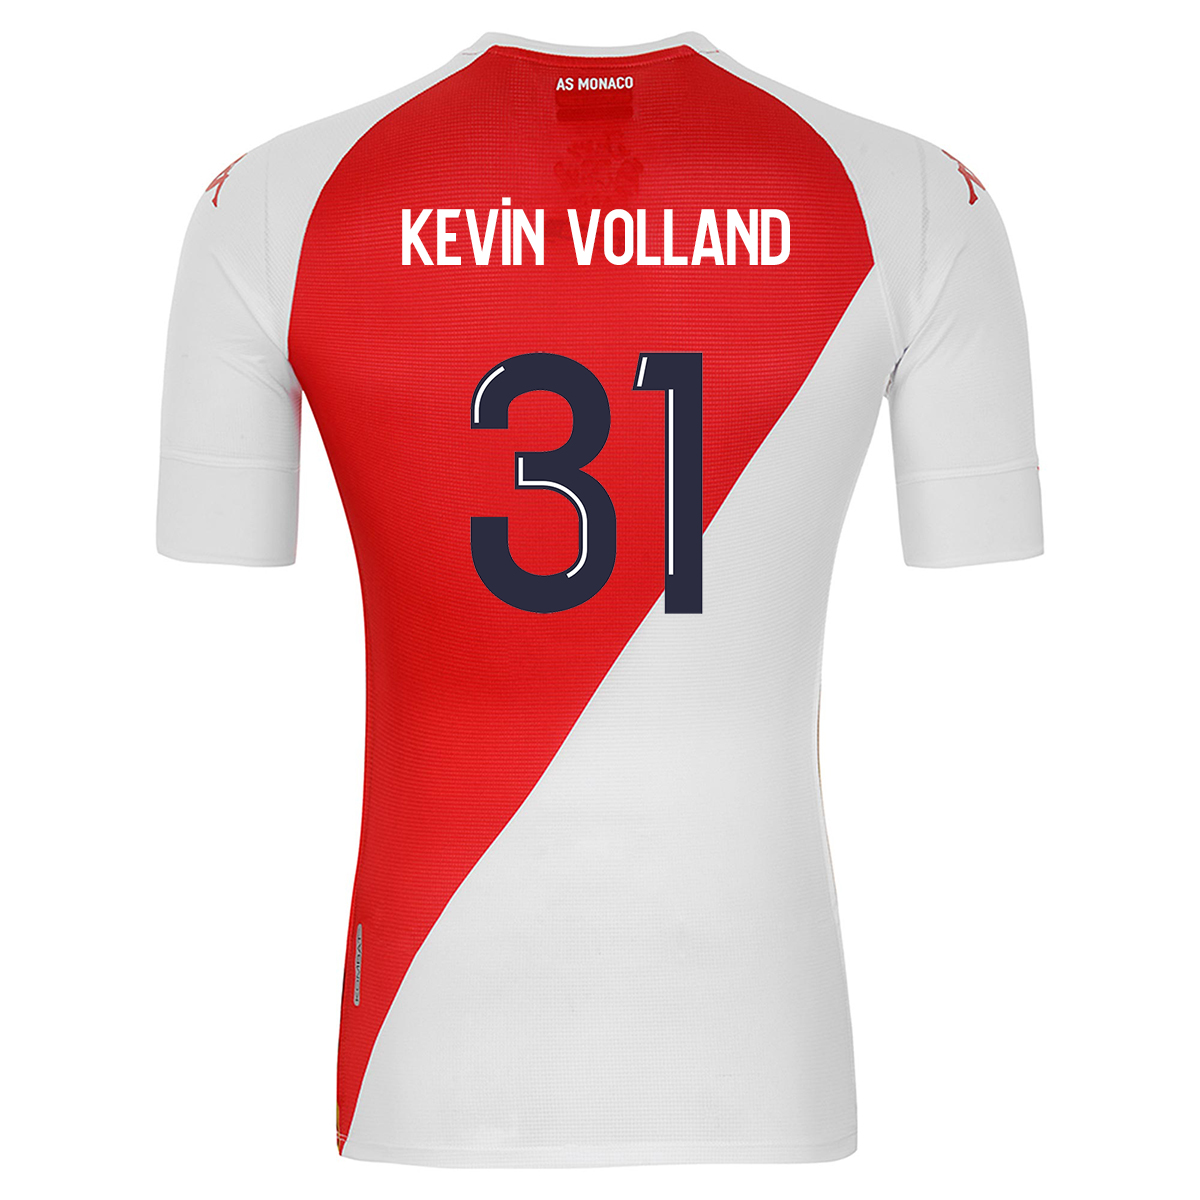 Herren Fußball Kevin Volland #31 Heimtrikot Rot Weiß Trikot 2020/21 Hemd